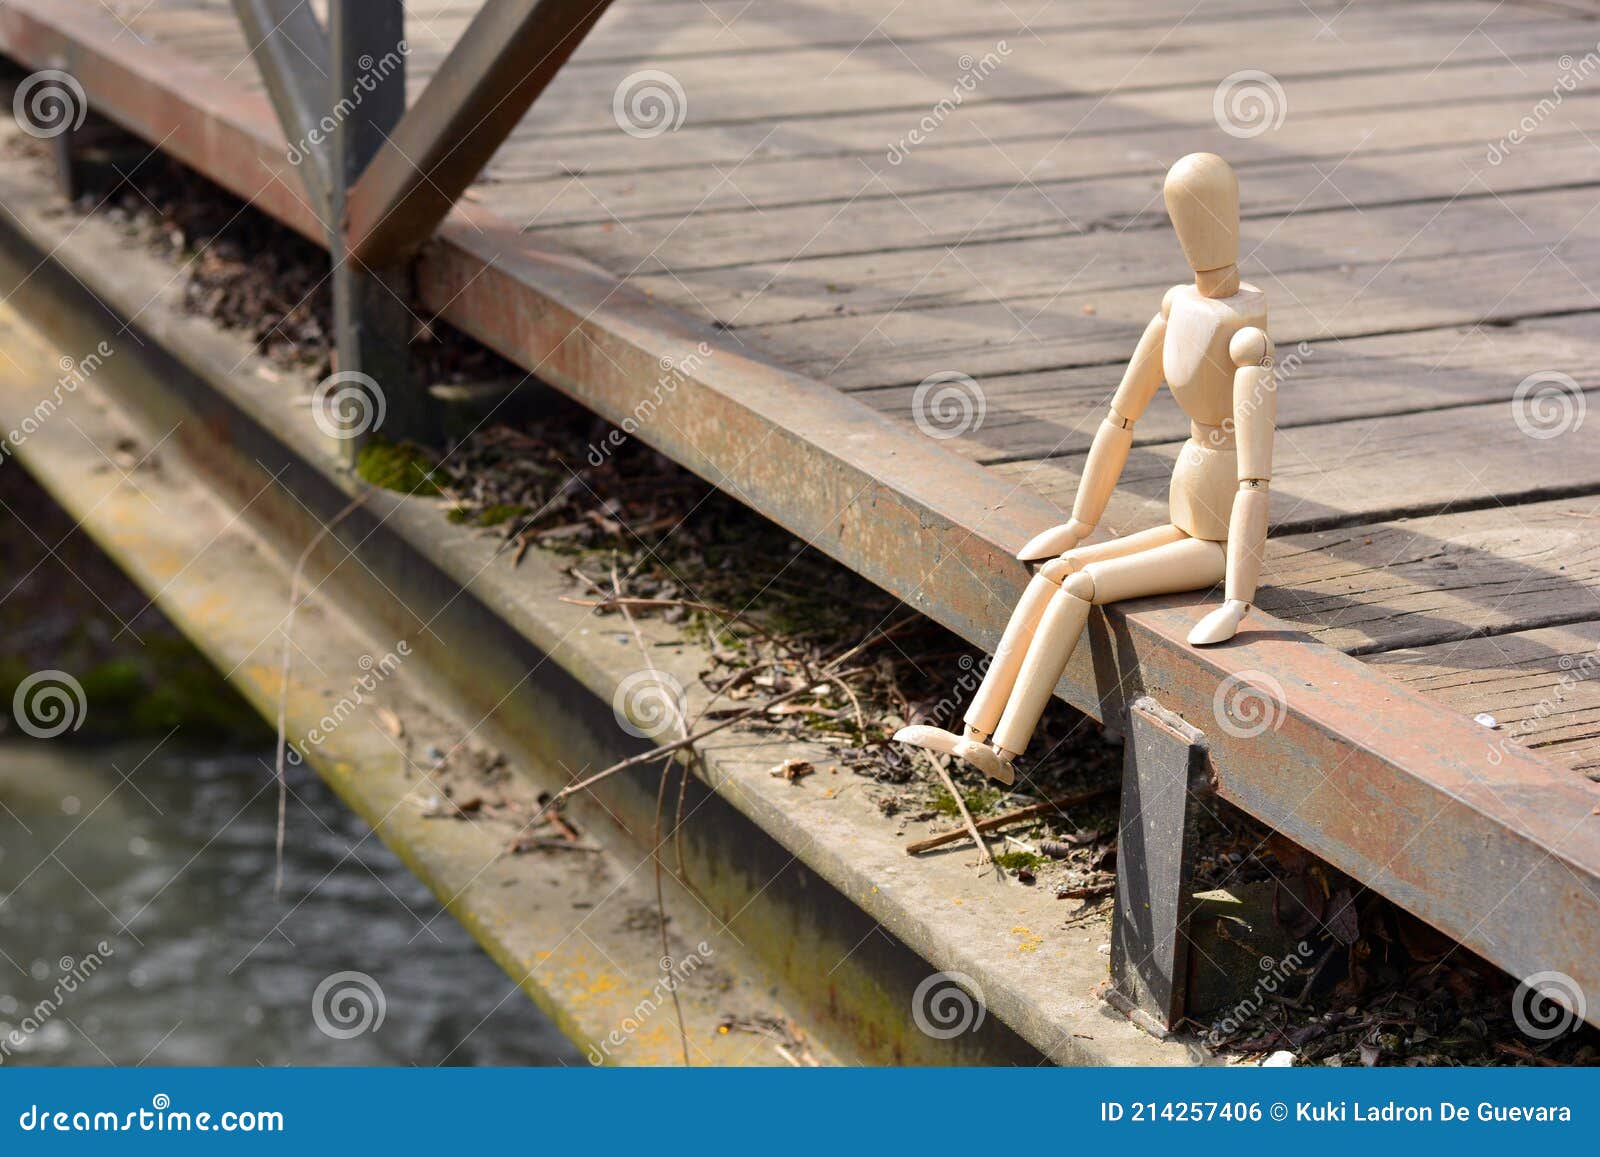 wooden mannequin sitting